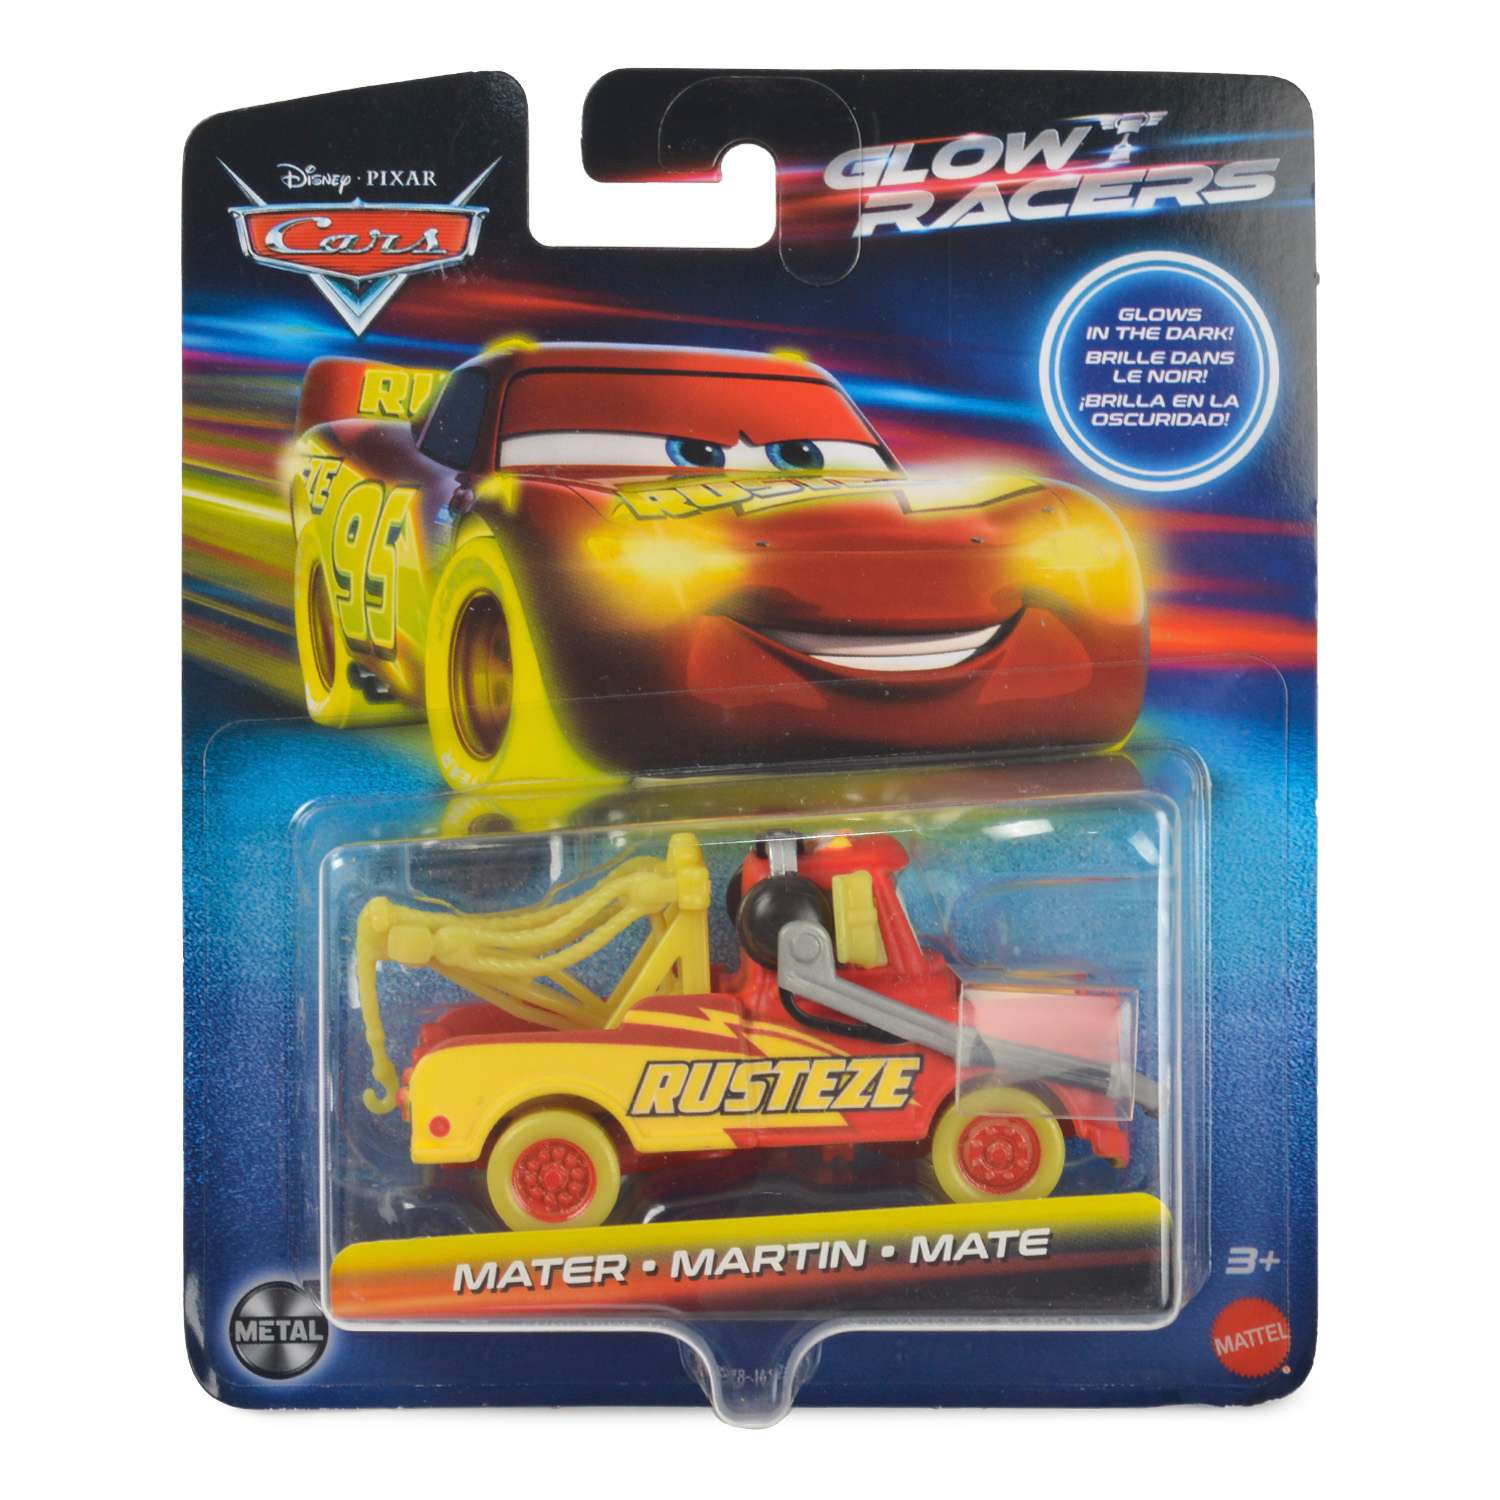 Машина Disney Pixar Cars Glow Racers HPG78 HPG76 - фото 2